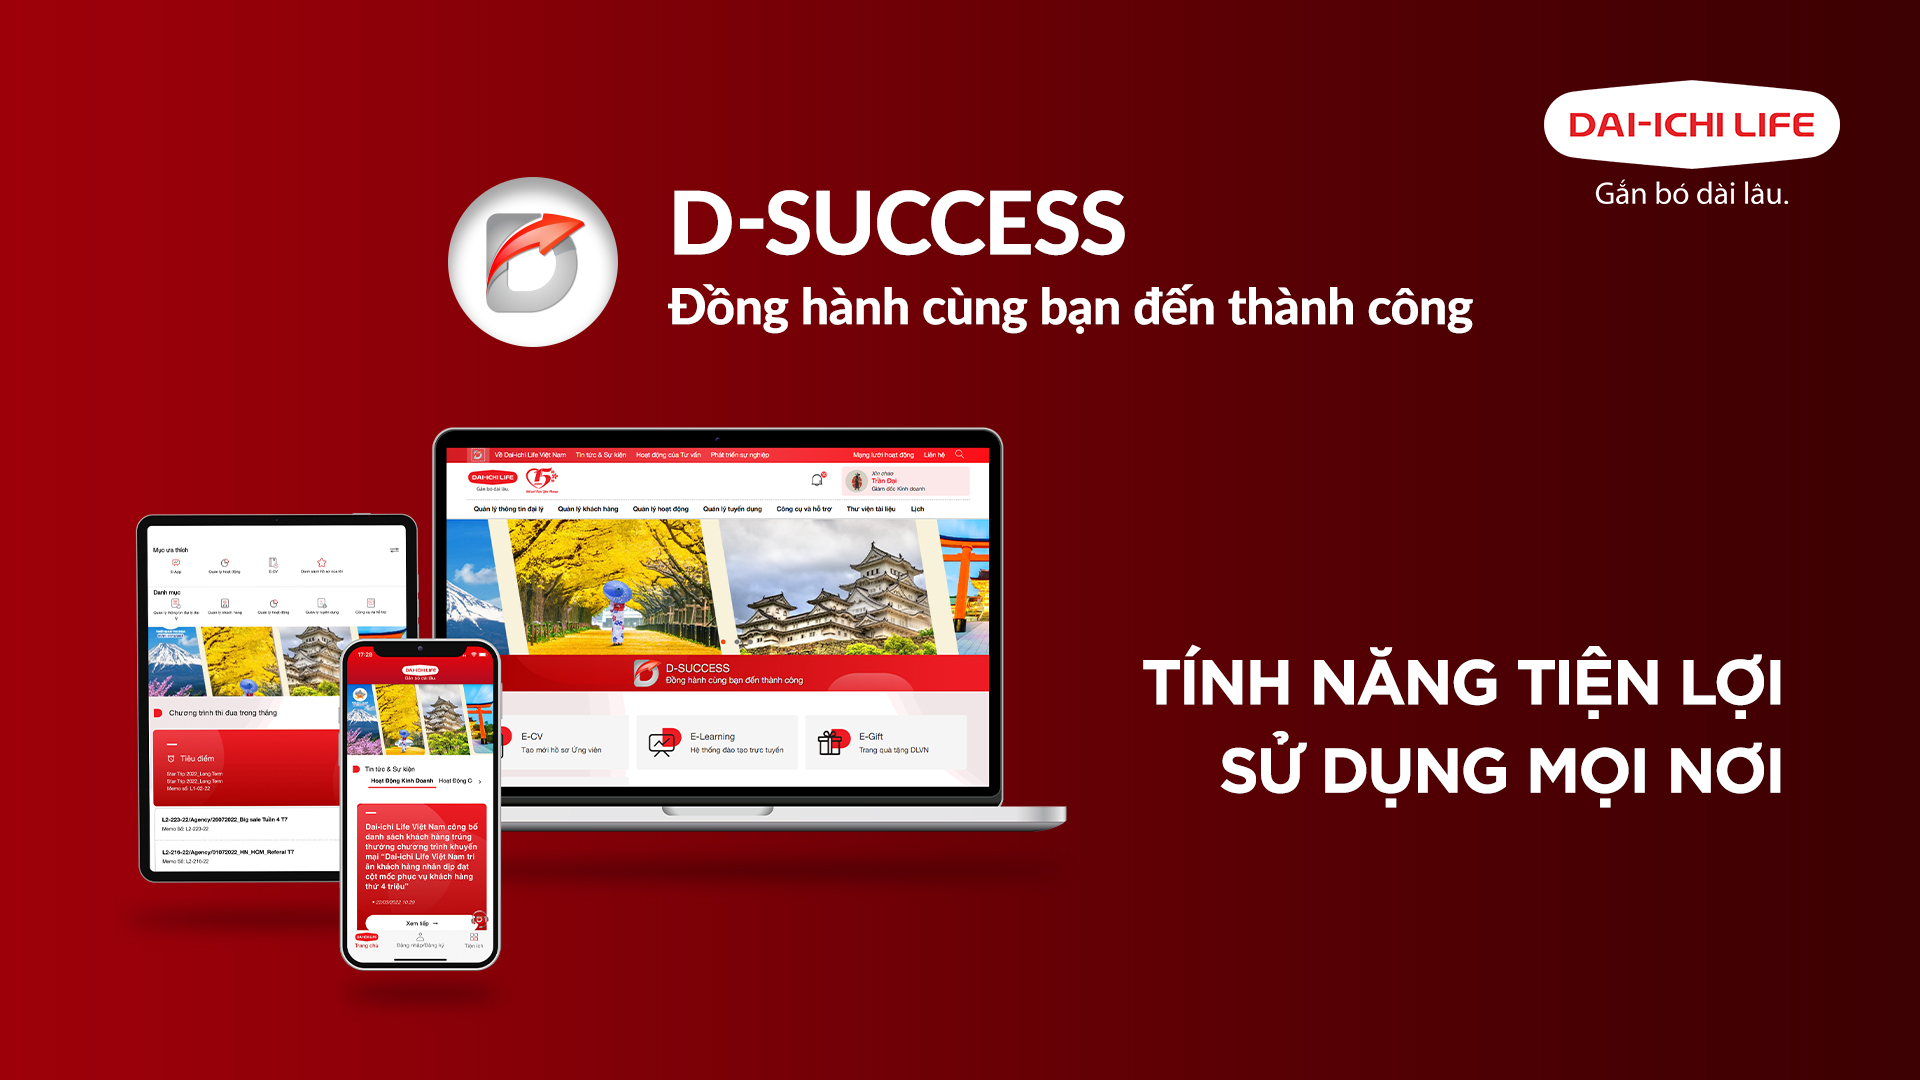 Dai-ichi Life Việt Nam ra mắt Hệ thống Dai-ichi Success dành cho Tư vấn Tài chính